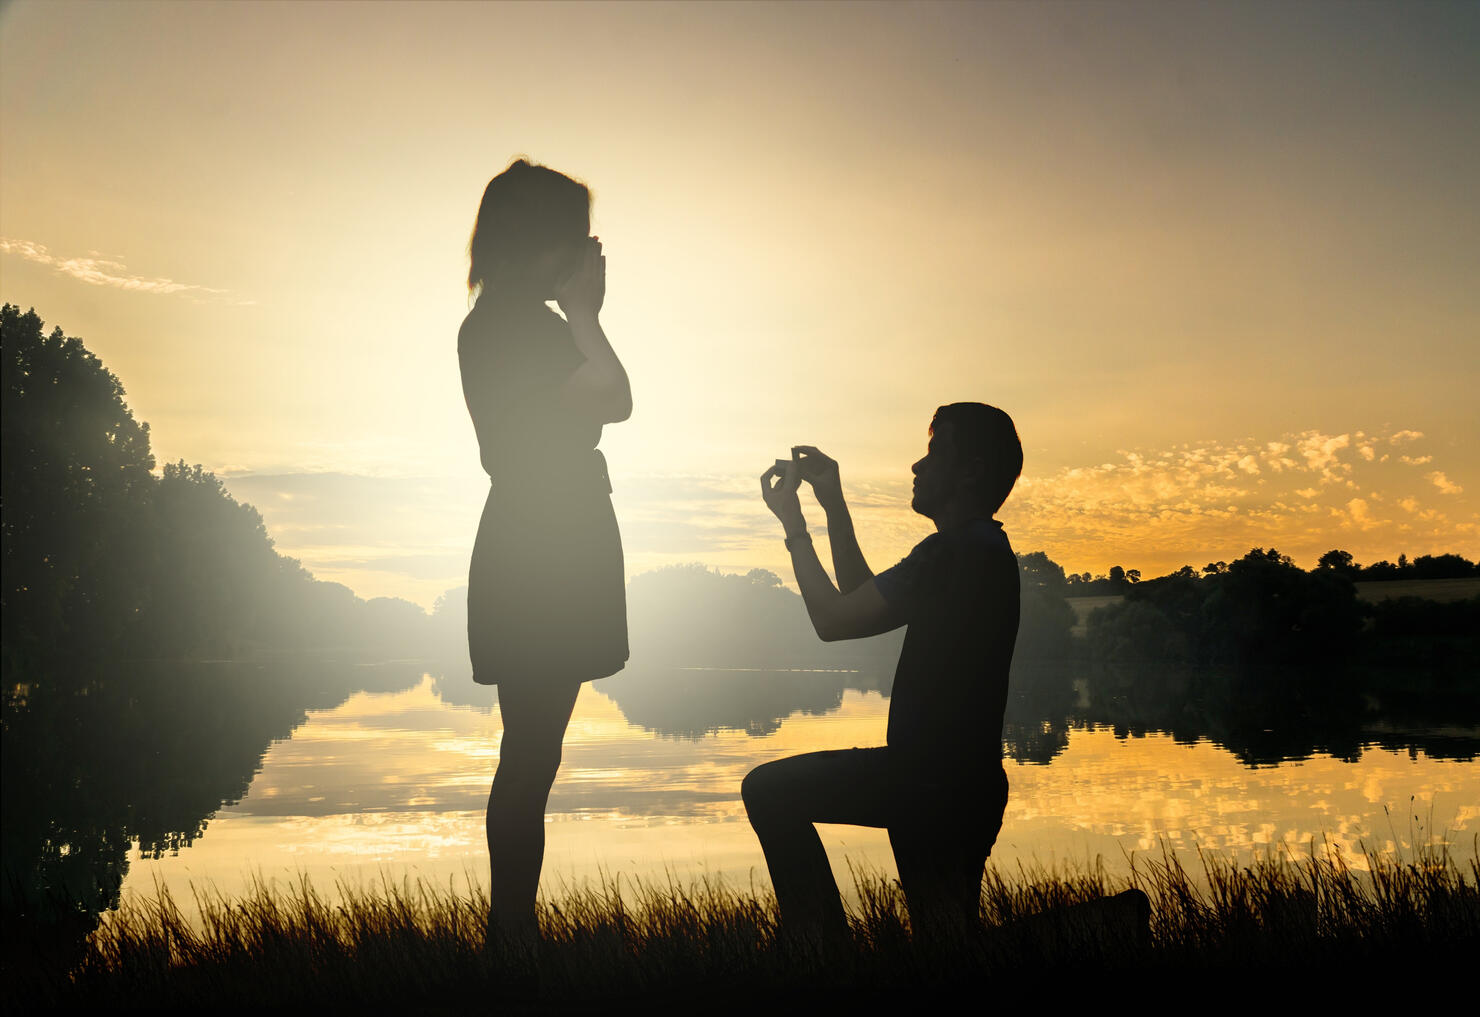 Wedding proposal. Dating at sun set. Man giving ring.